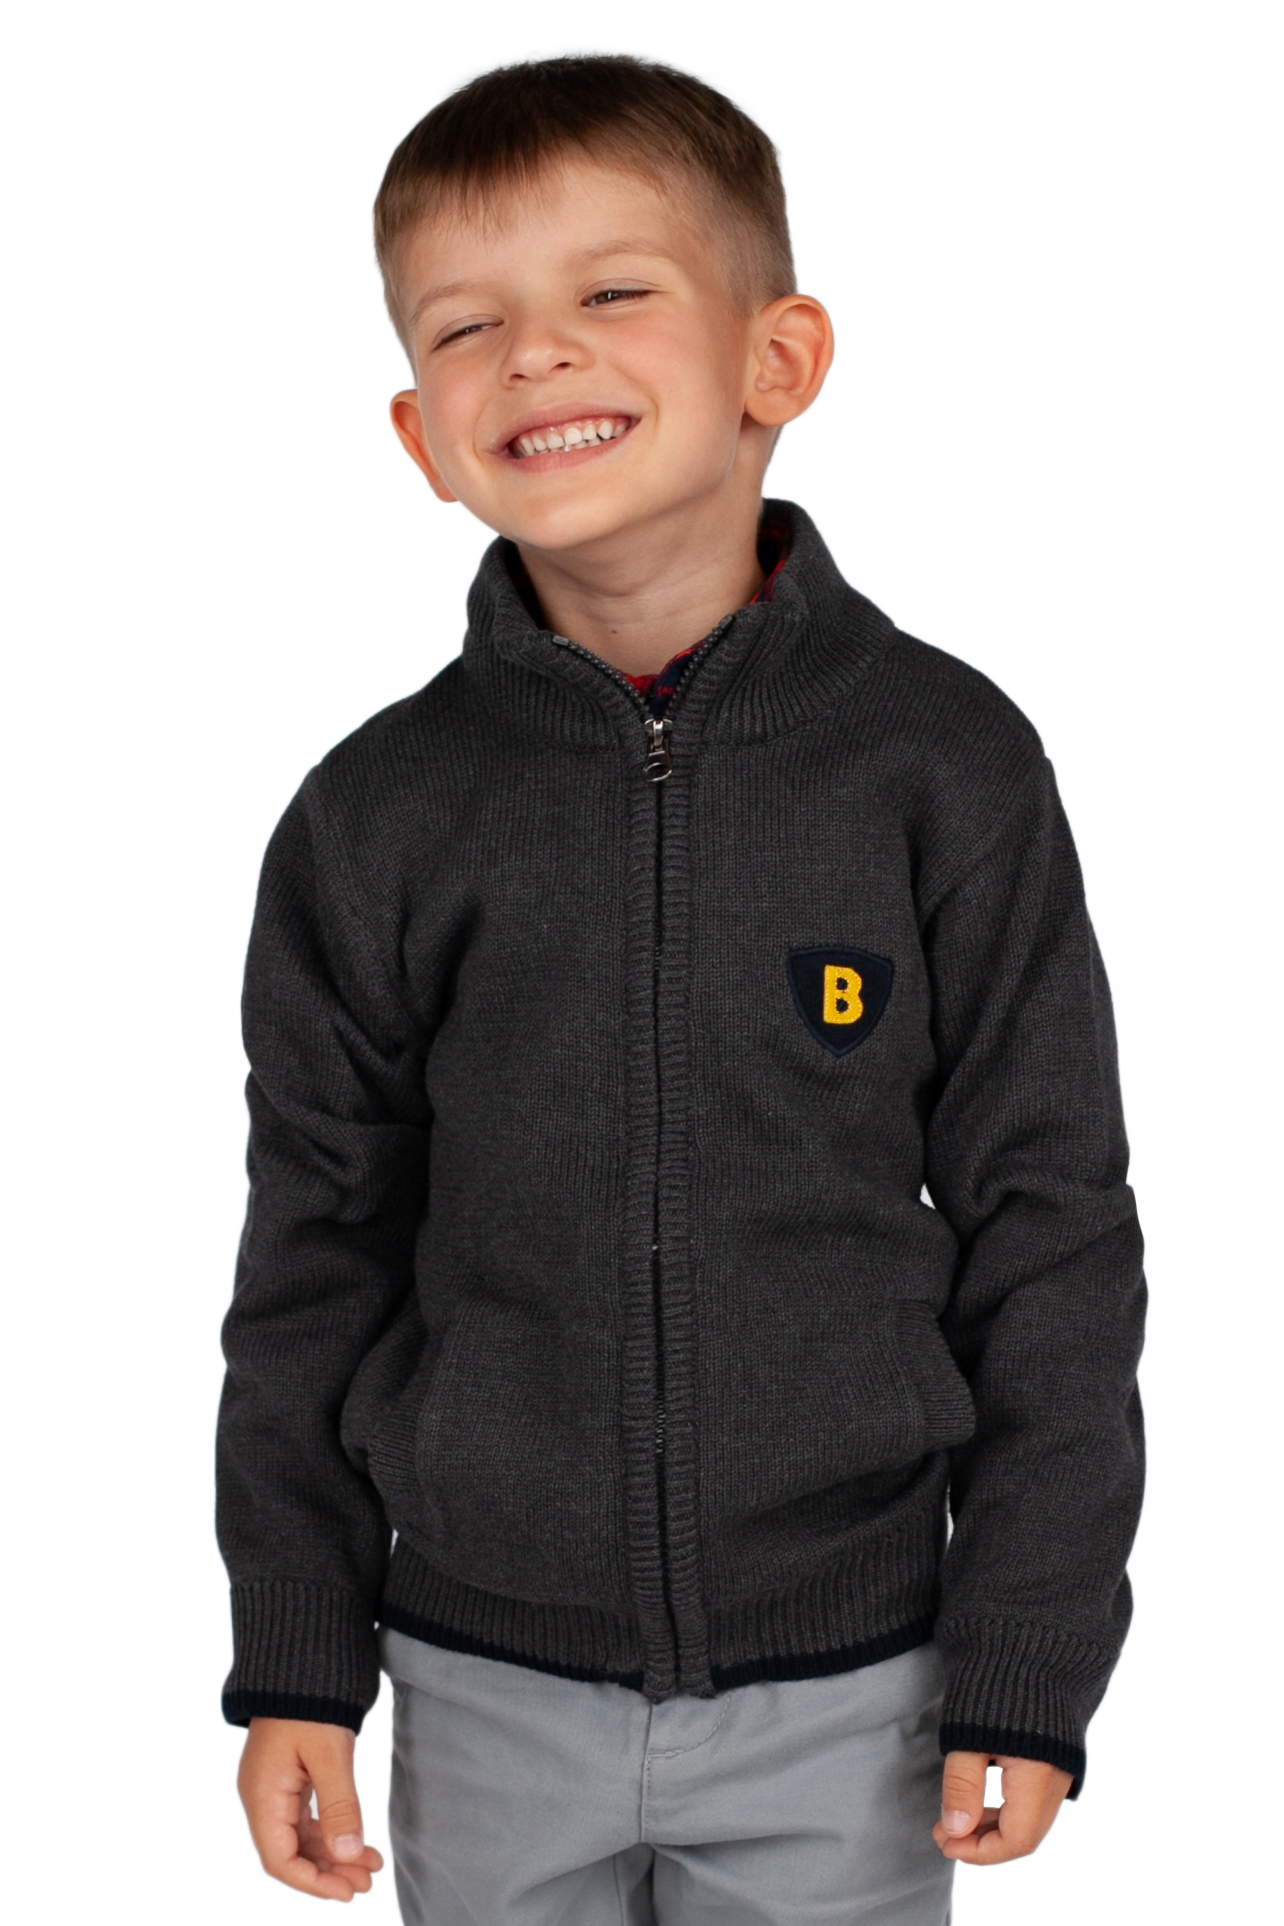 Кардиган для мальчика (арт. baon BK648502), размер 122-128, цвет grey melange#серый Кардиган для мальчика (арт. baon BK648502) - фото 1